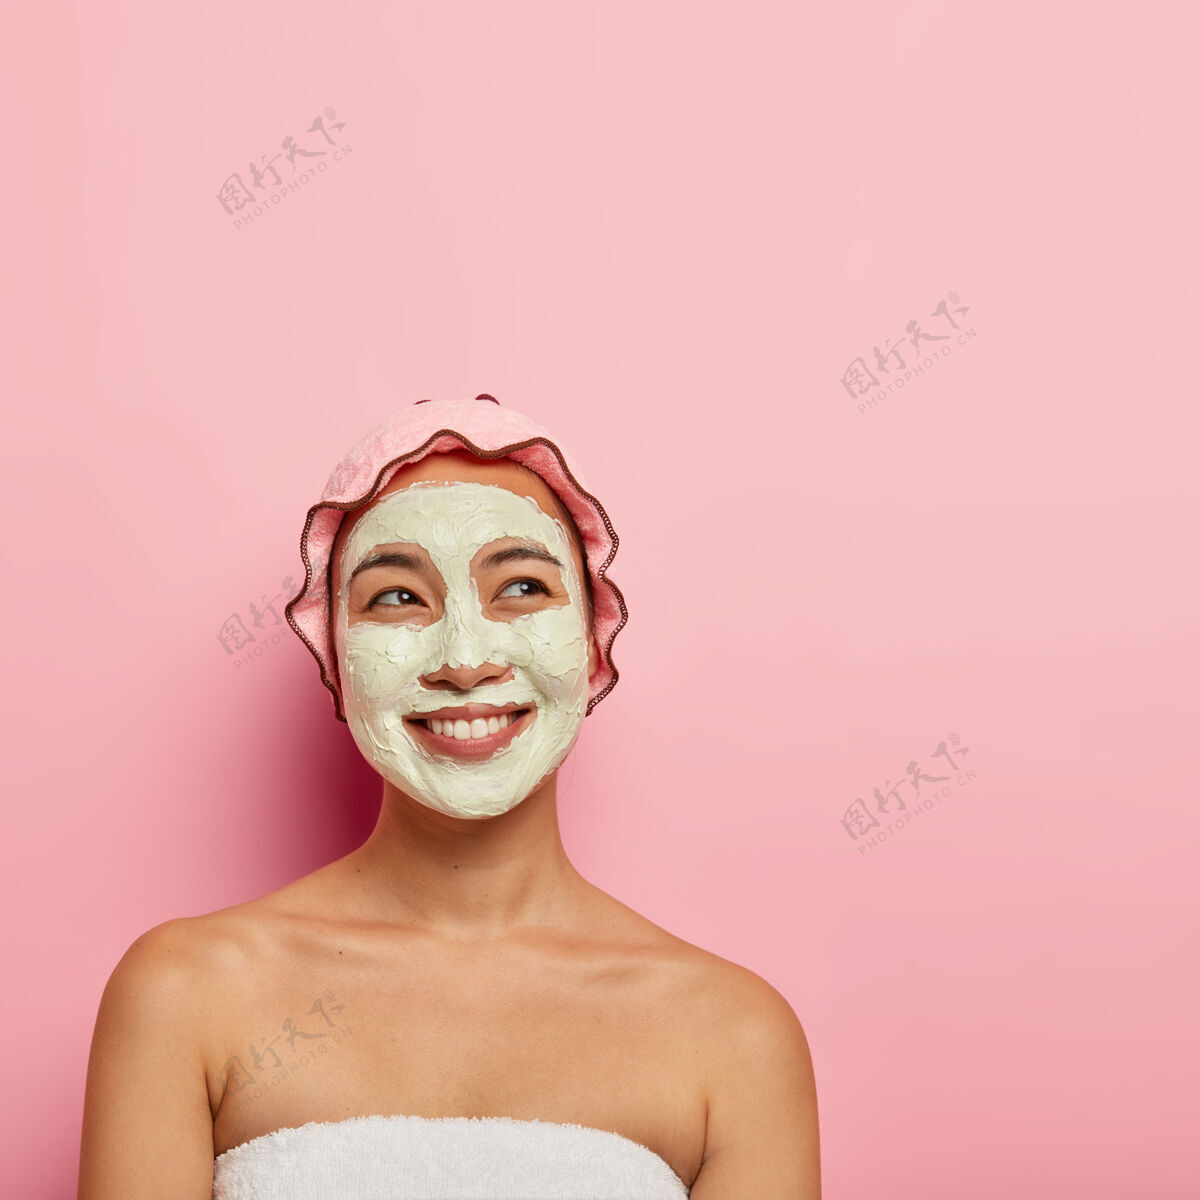 面膜专业的护肤理念快乐的民族女性用面膜来清洁和滋润皮肤 用梦幻般的快乐表情 露出微笑 裹在柔软的毛巾里 摆在室内愉悦护肤满意